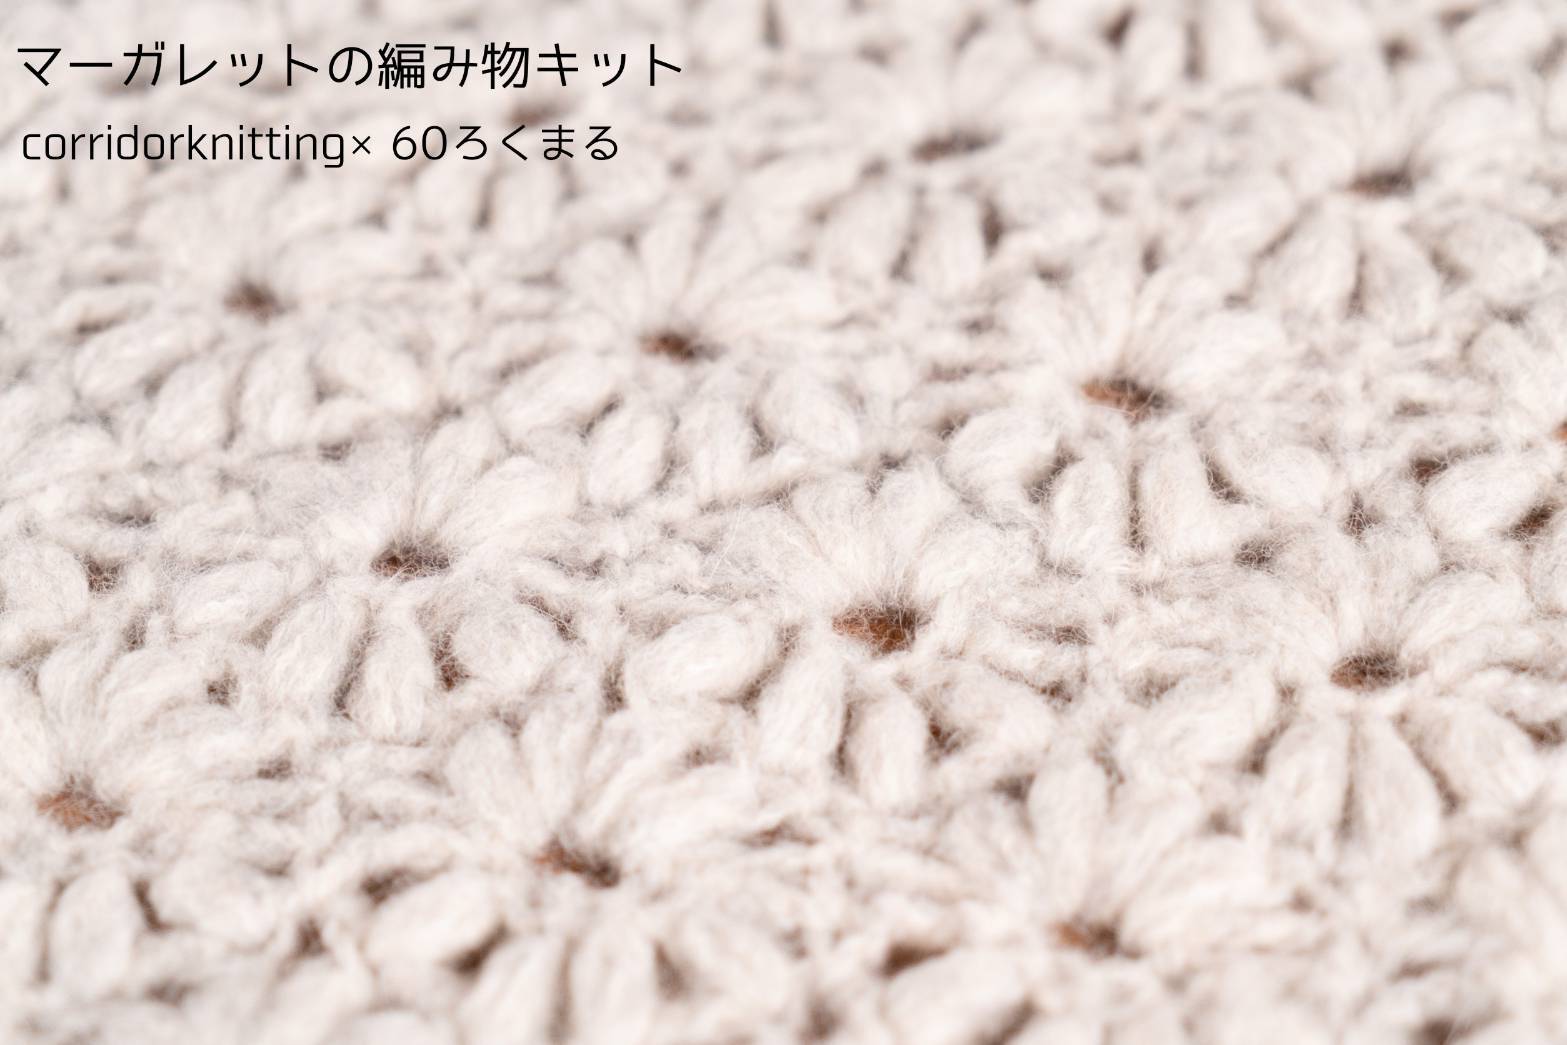 マーガレットの編み物キット byコリドーニッティング 60ろくまる編み物キット販売サイト 世界が認めた毛糸を使用した編み物キット